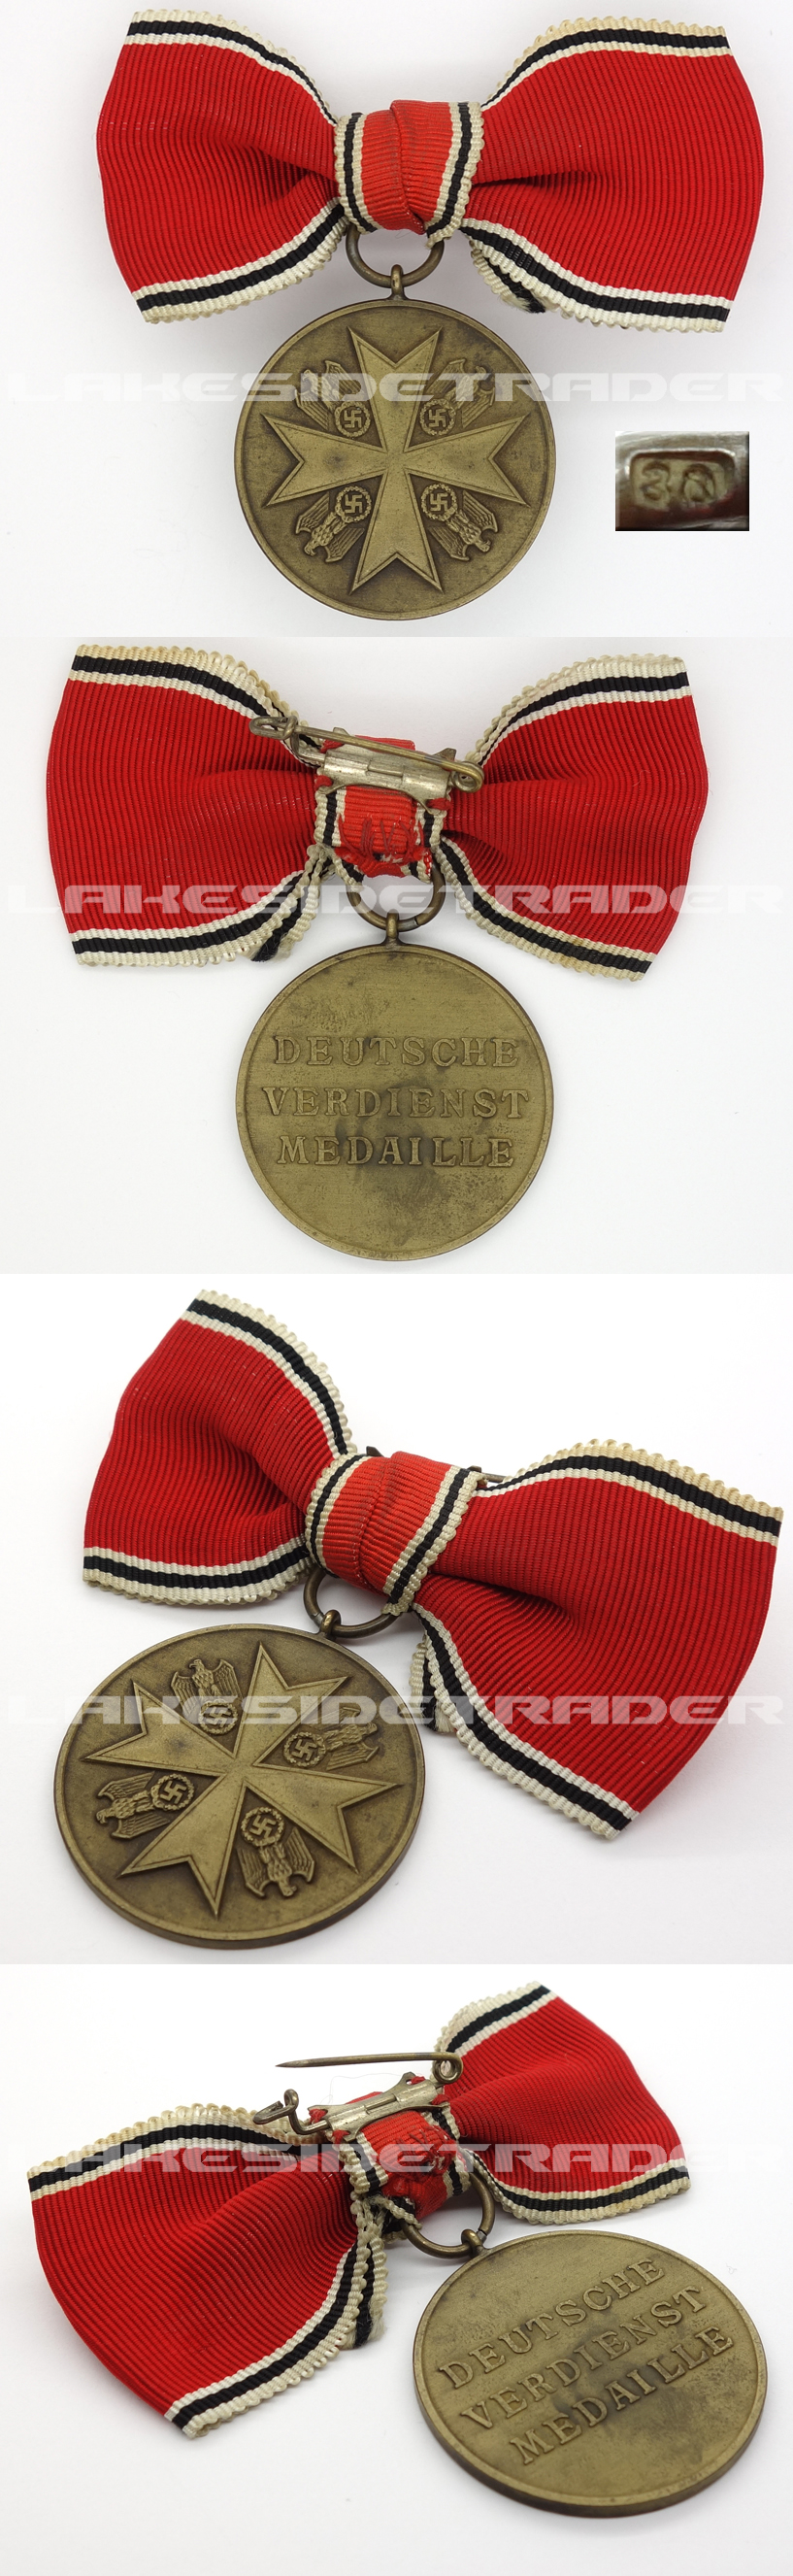 Ladies Ribbon - German Medal of Merit 1943 by 30 